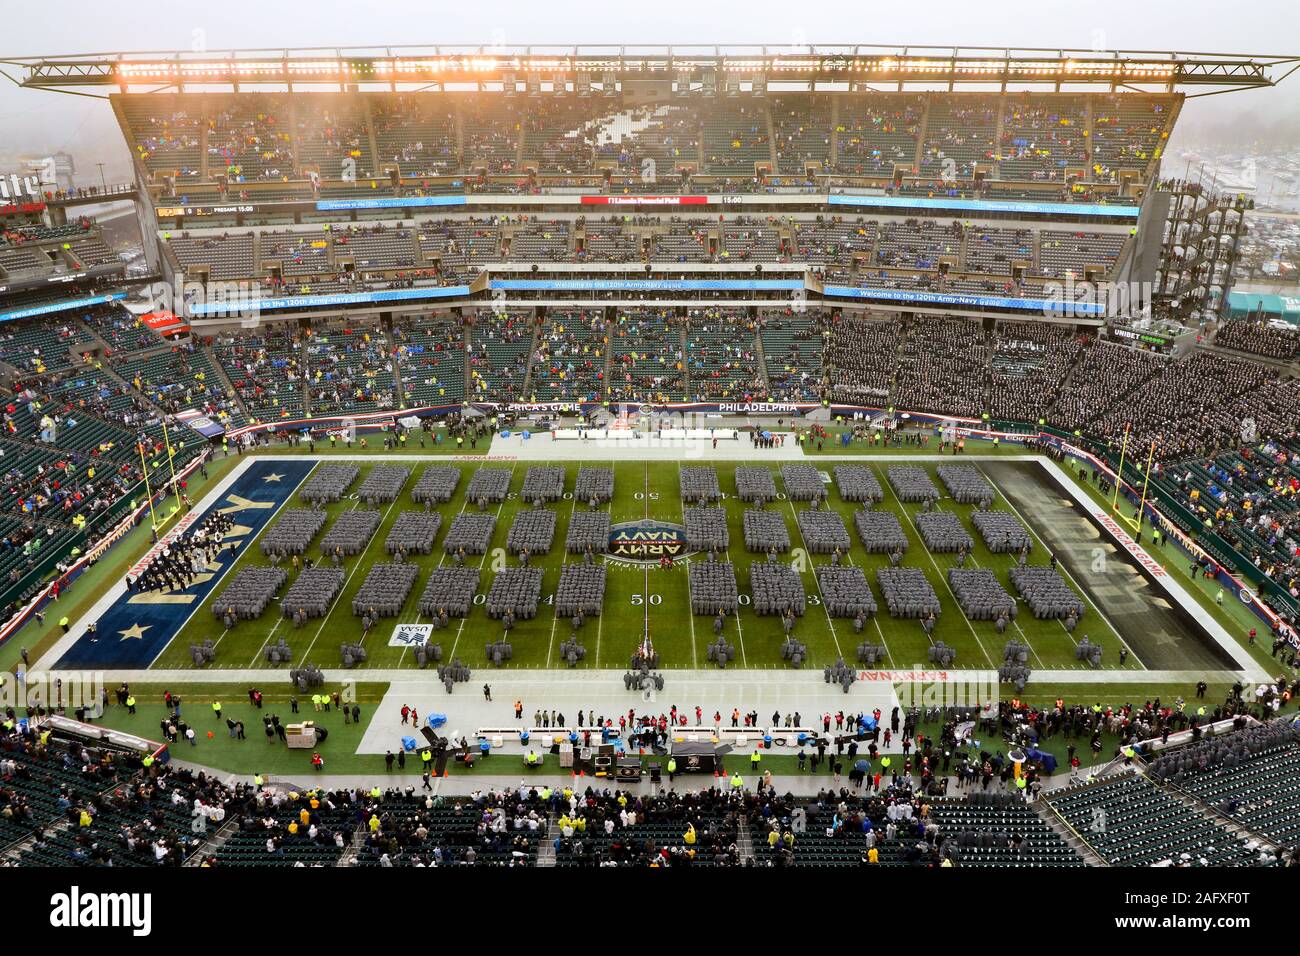 Vista de Lincoln Financial Field en el comienzo de la 120ª Army-Navy juego de fútbol en el 14 de diciembre de 2019 en Filadelfia, Pensilvania. Marina reclama el título superando 31-7 del Ejército. Foto de stock